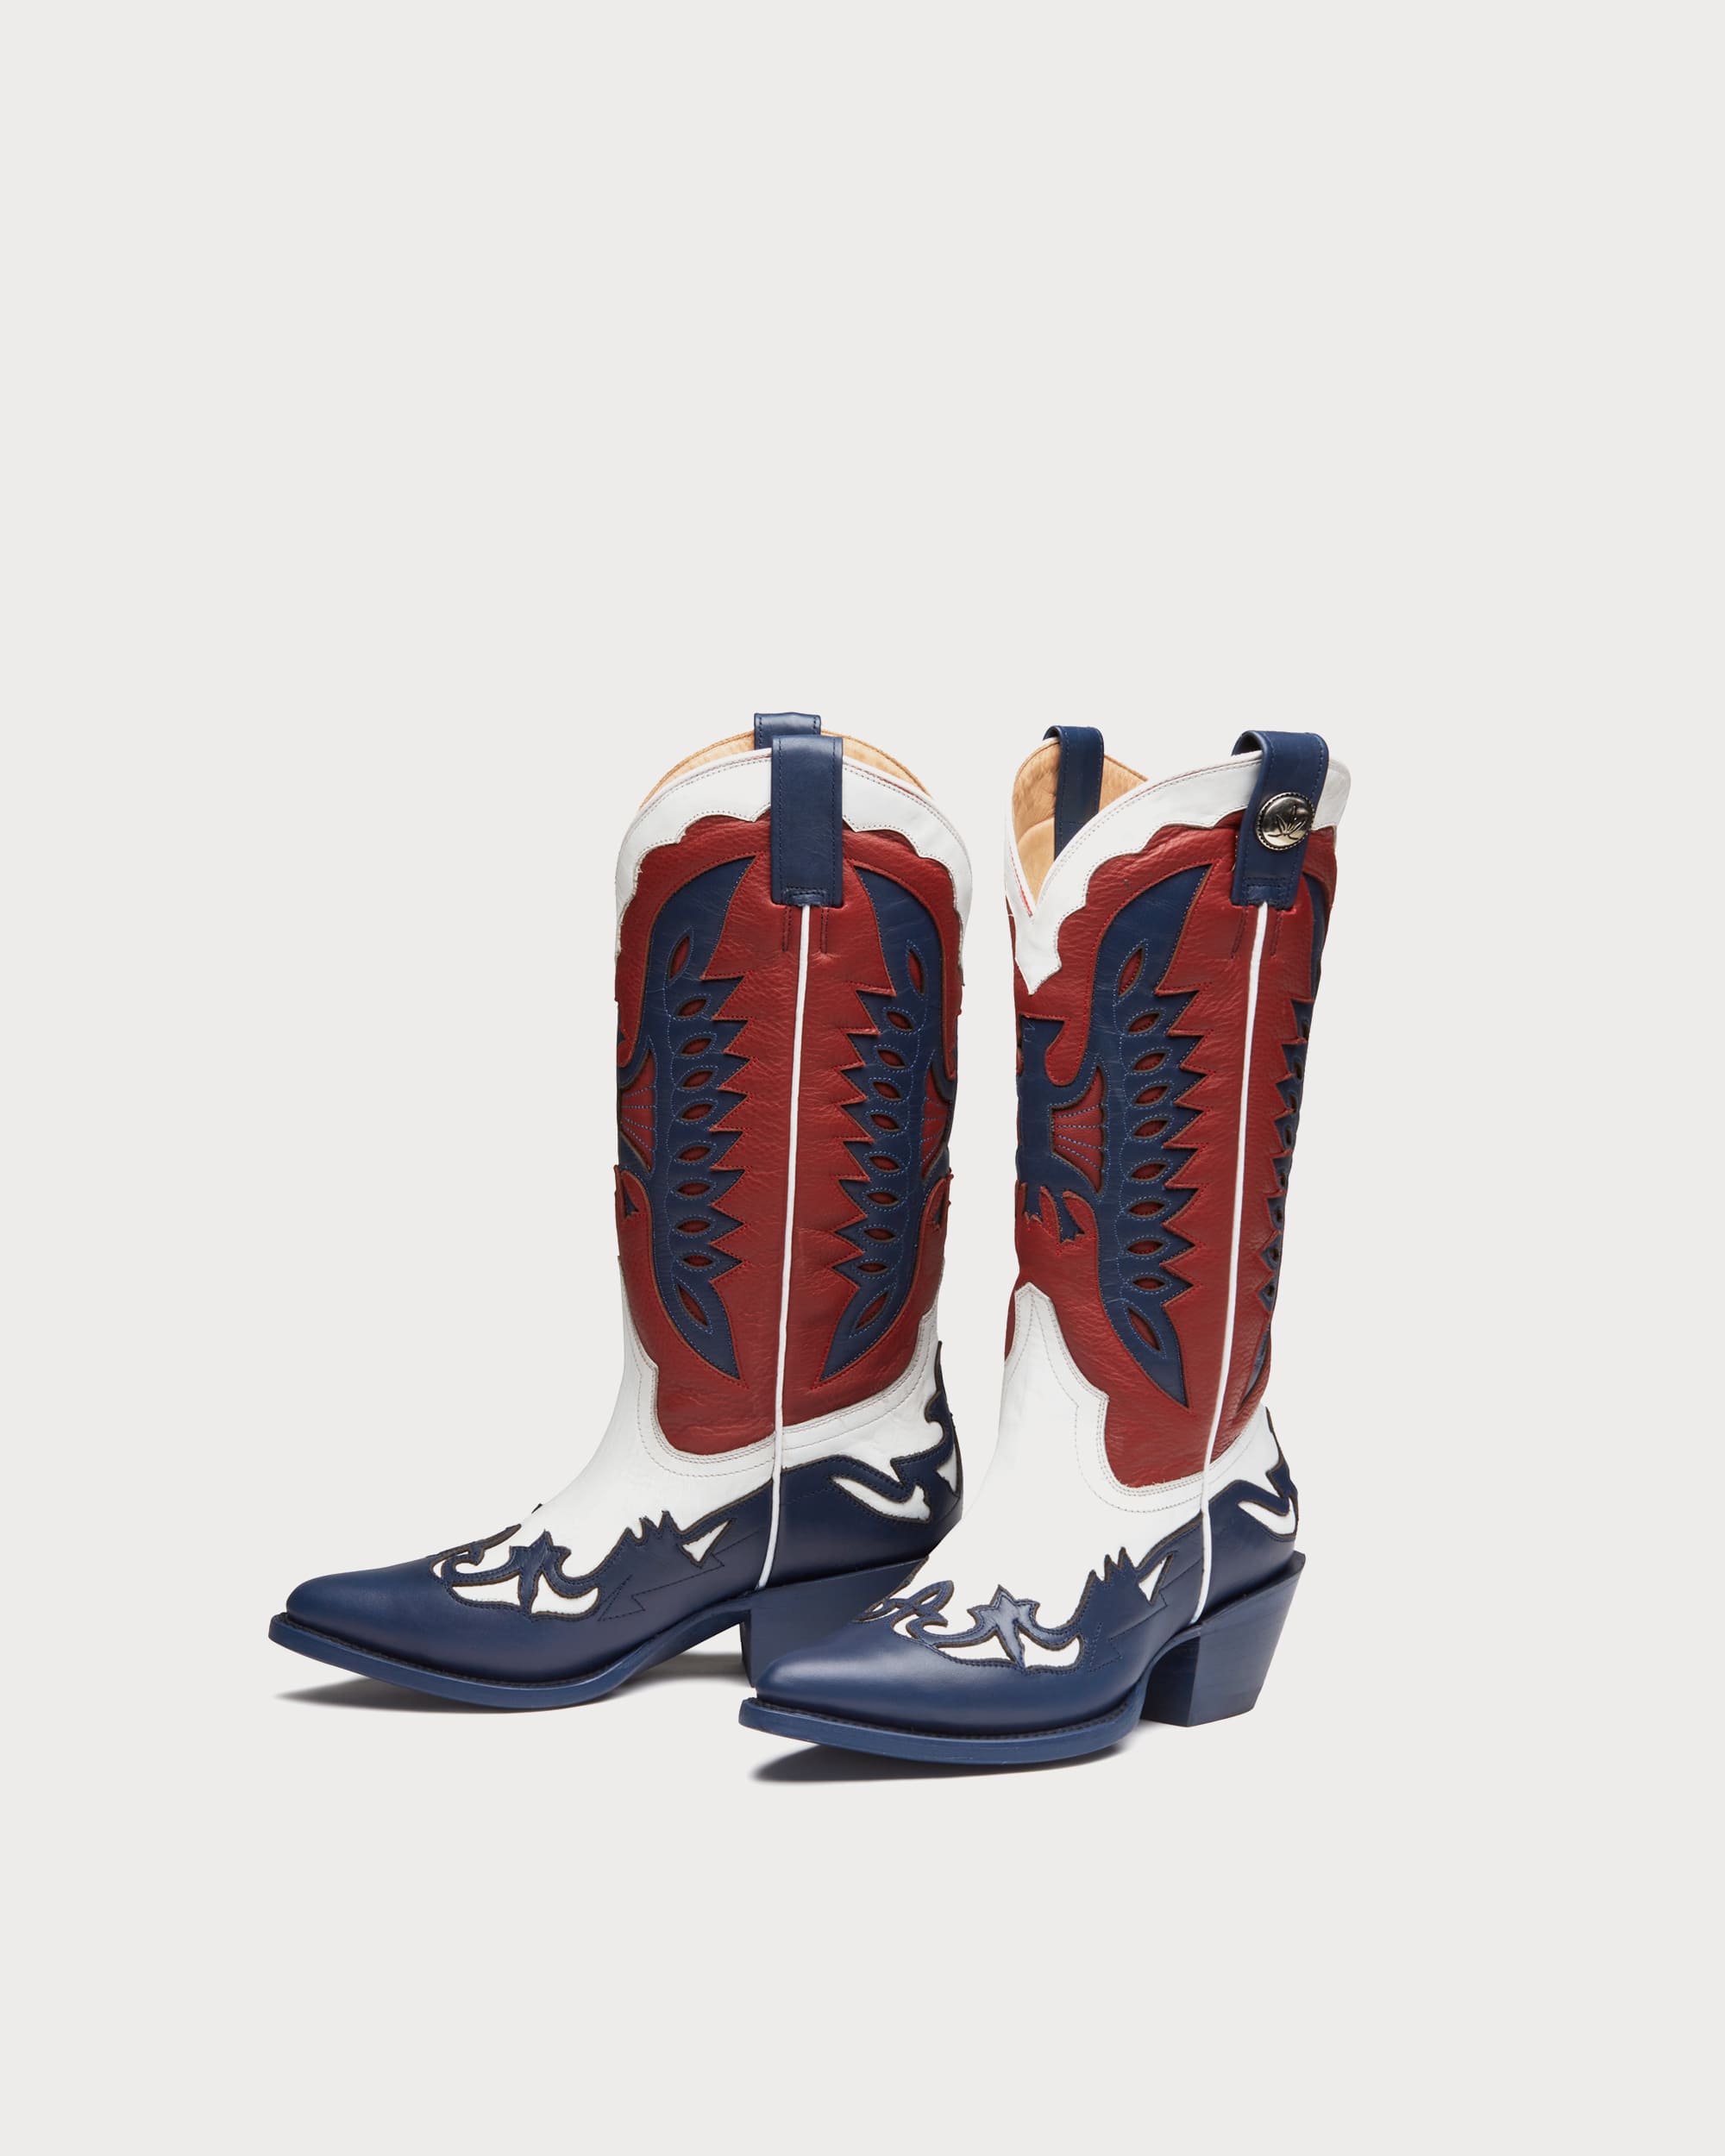 Blue Cowboy Boots Women's - Mezcalero Boots – Mezcalero USA